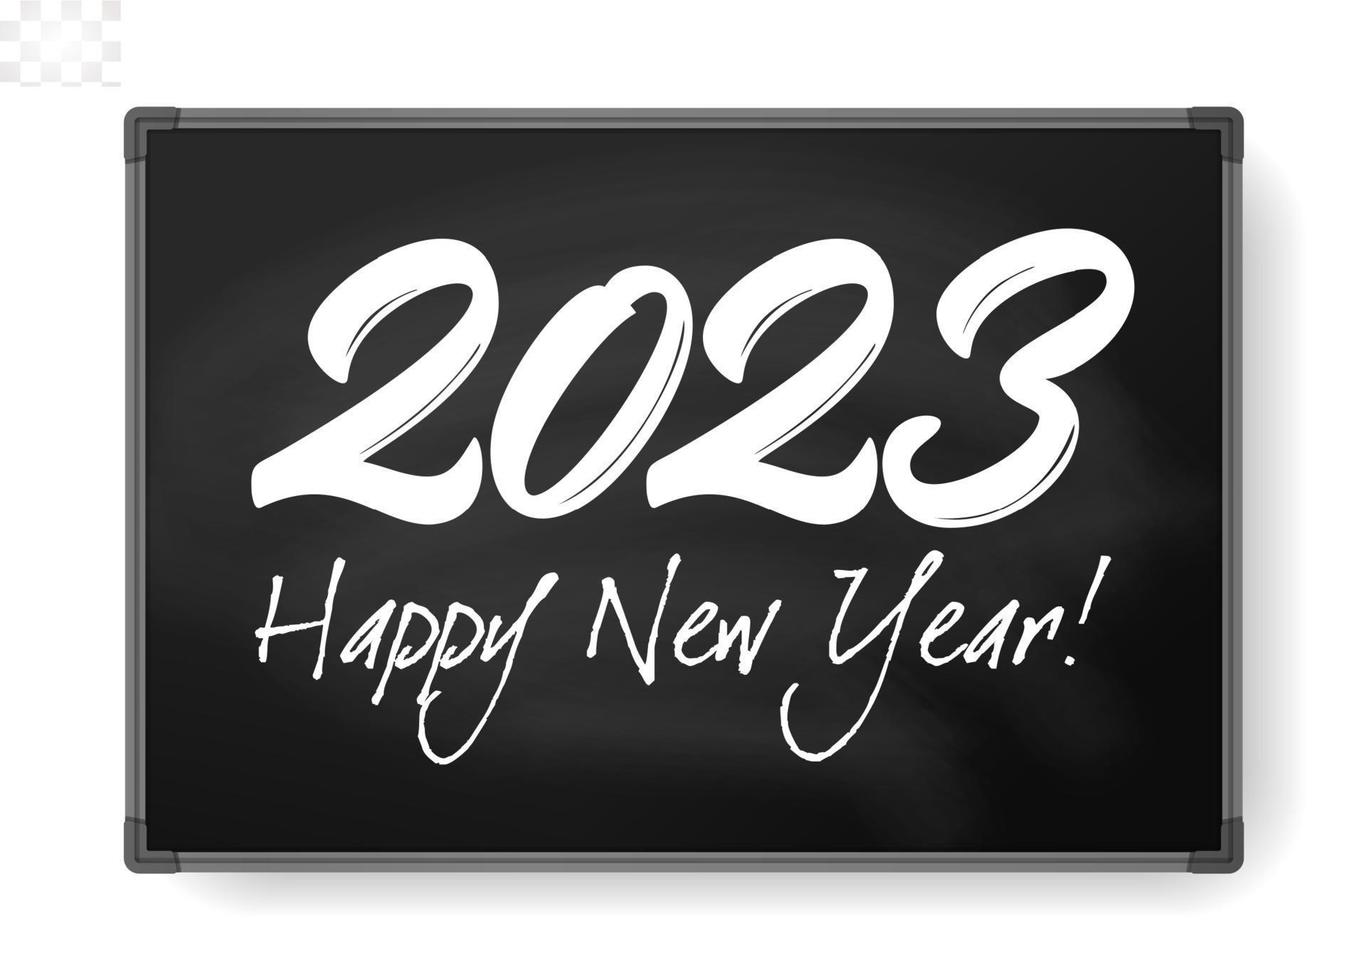 2023 tal krita skriven på svarta tavlan. Lycklig ny år händelse affisch, hälsning kort omslag, 2023 kalender design, inbjudan till fira ny år och jul. vektor illustration.